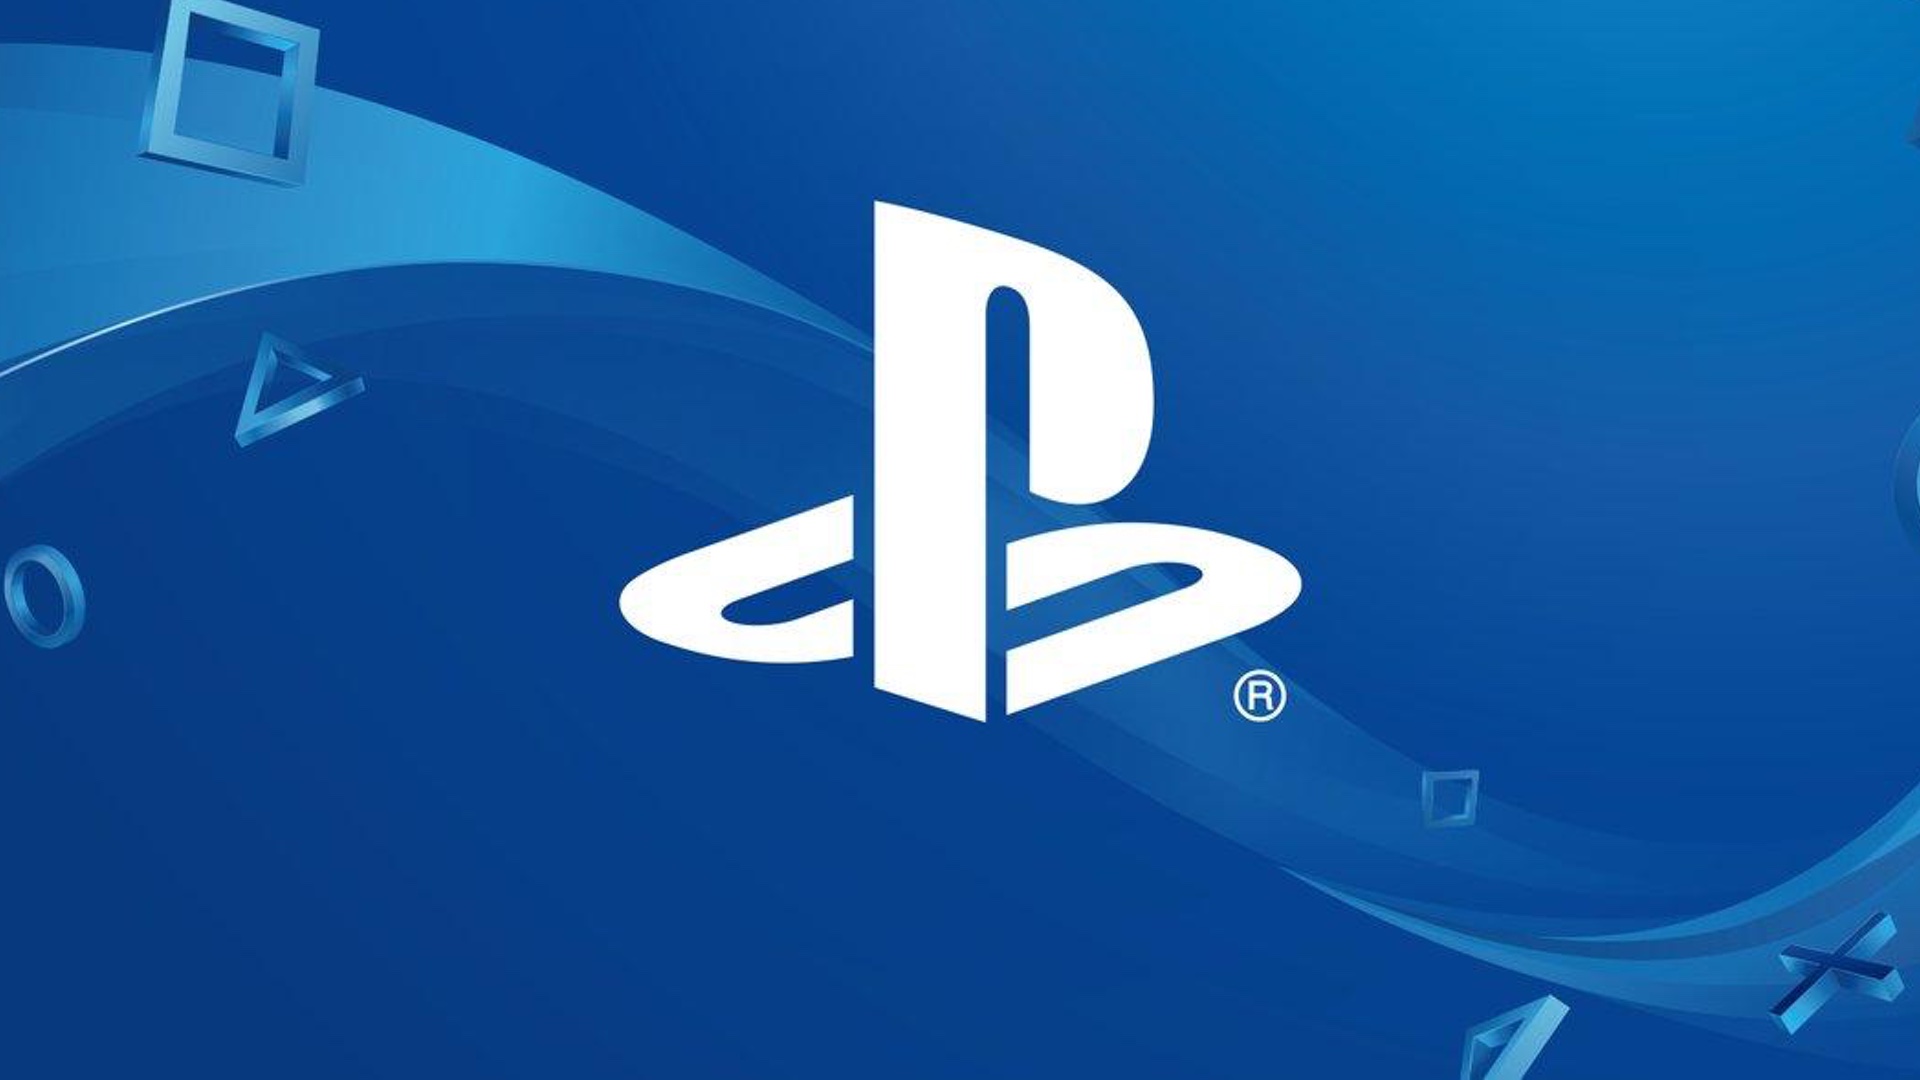 Sony dévoile les premières infos techniques sur sa prochaine Playstation 5 avec l'interview de Mark Cerny